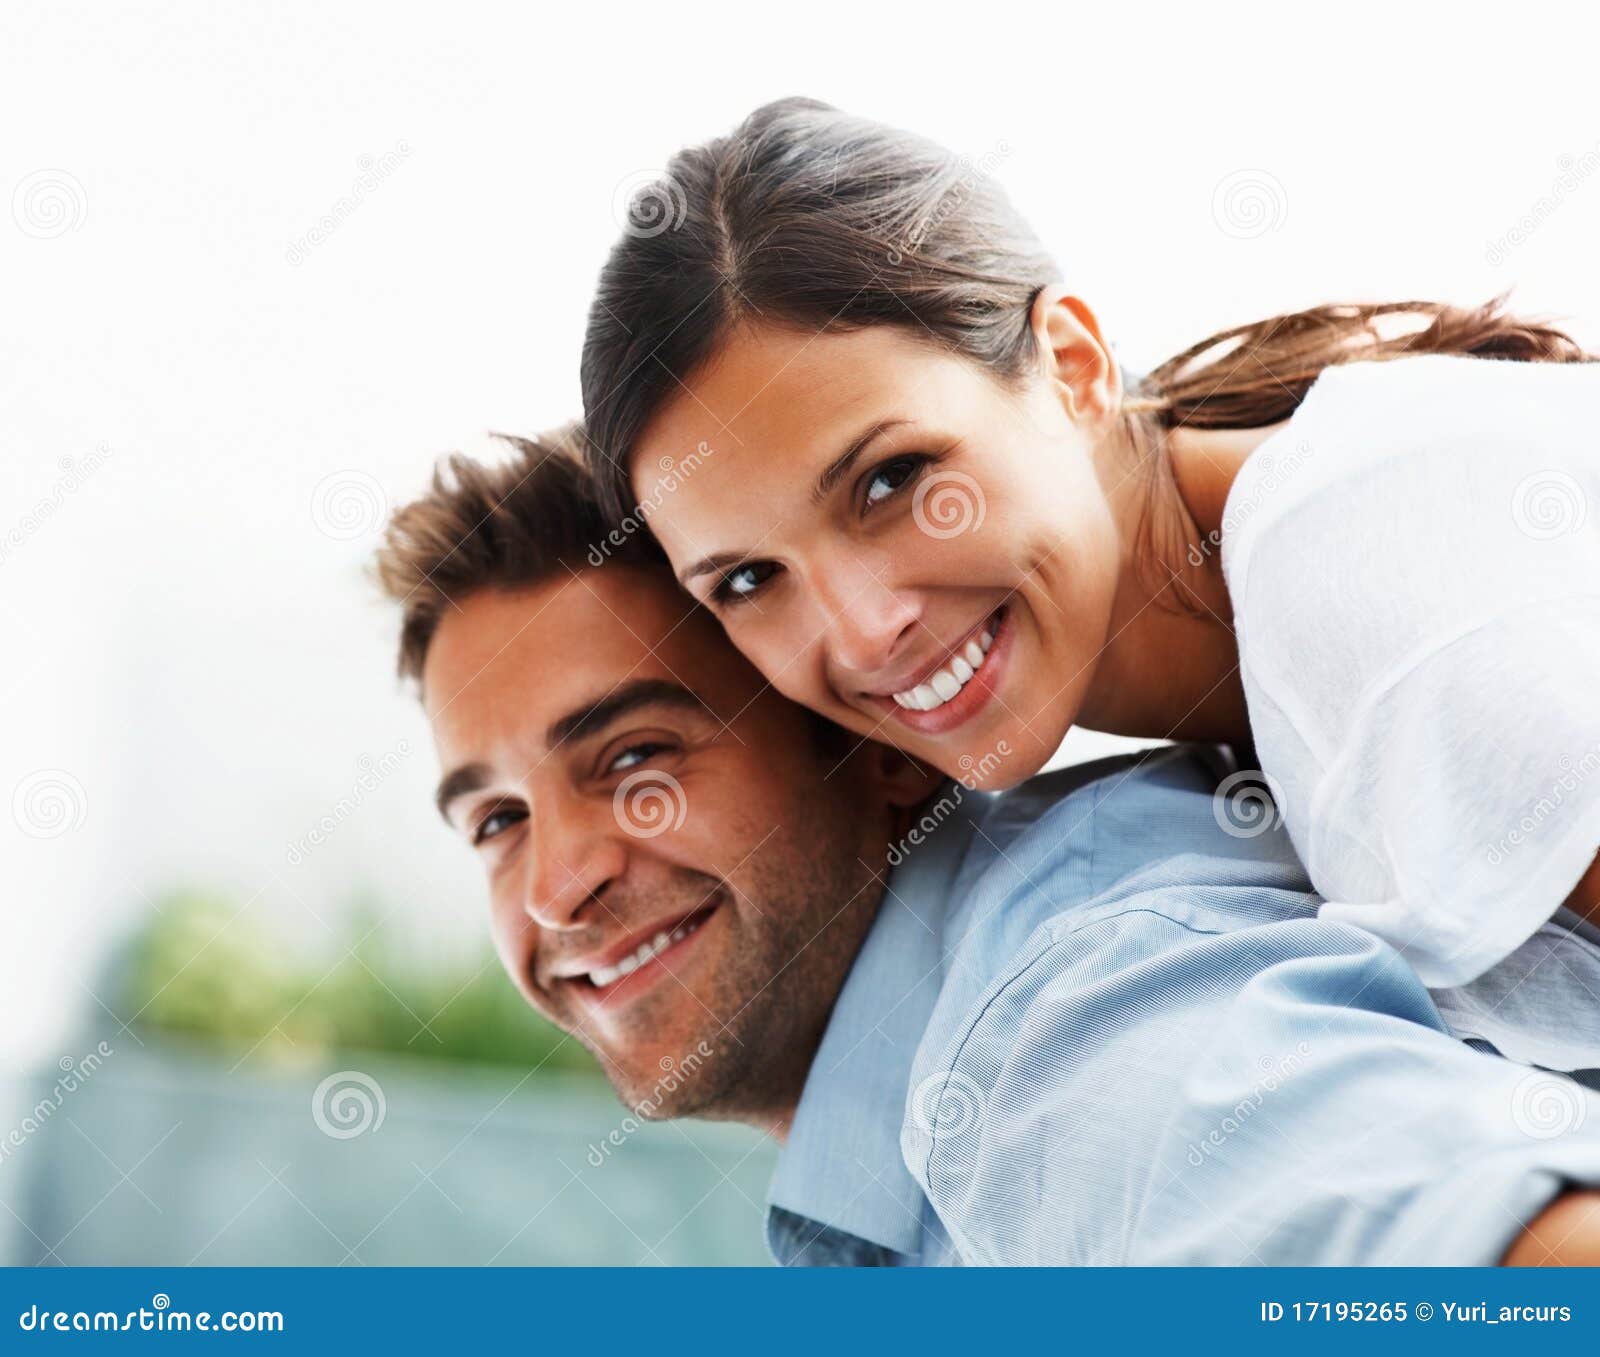 Funloving Couple Enjoying Life Stock Image Image Of